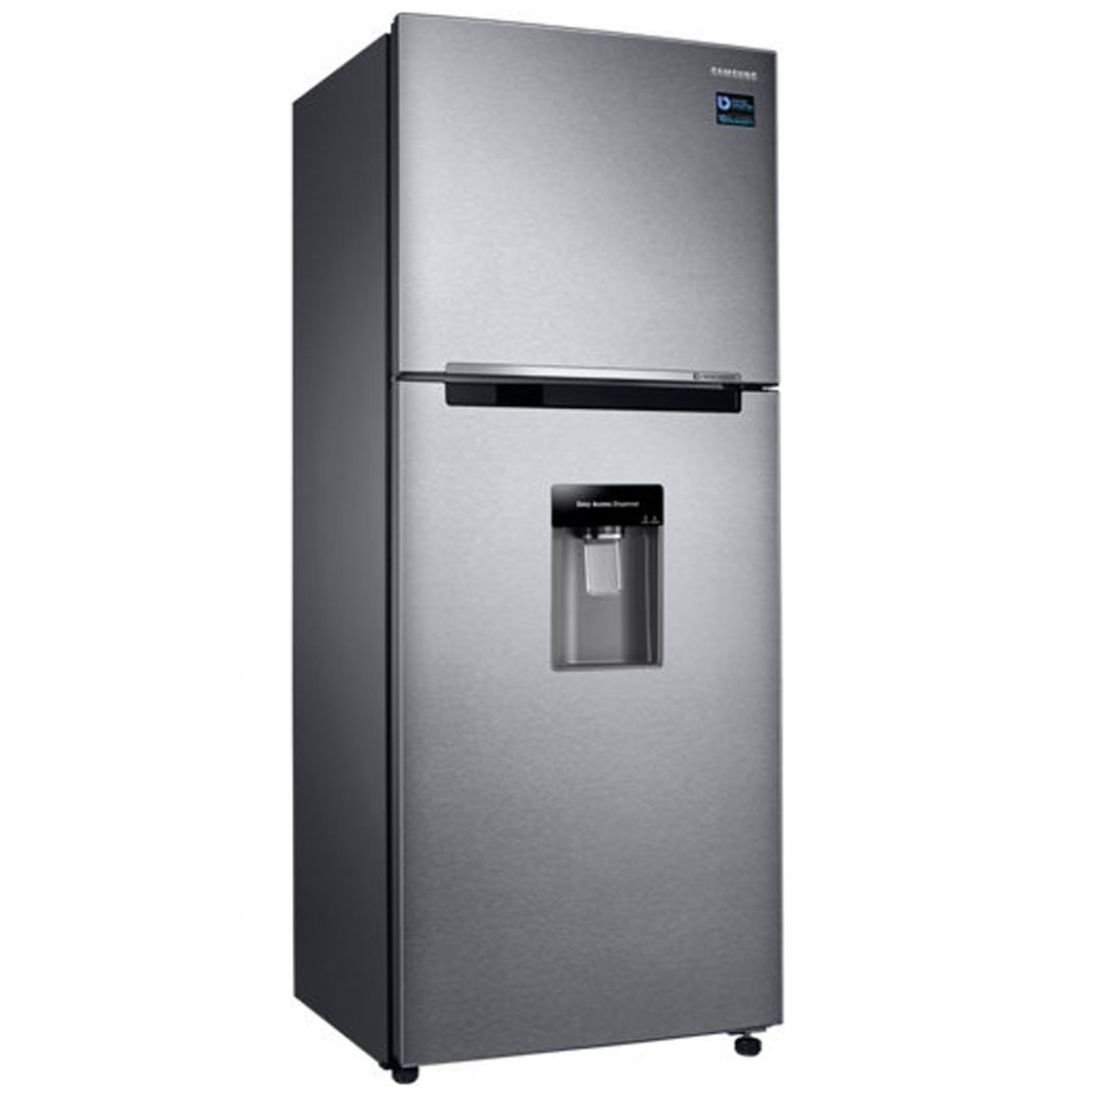 Refrigerador Top Mount 11 Pies Easy Clean Steel Samsung